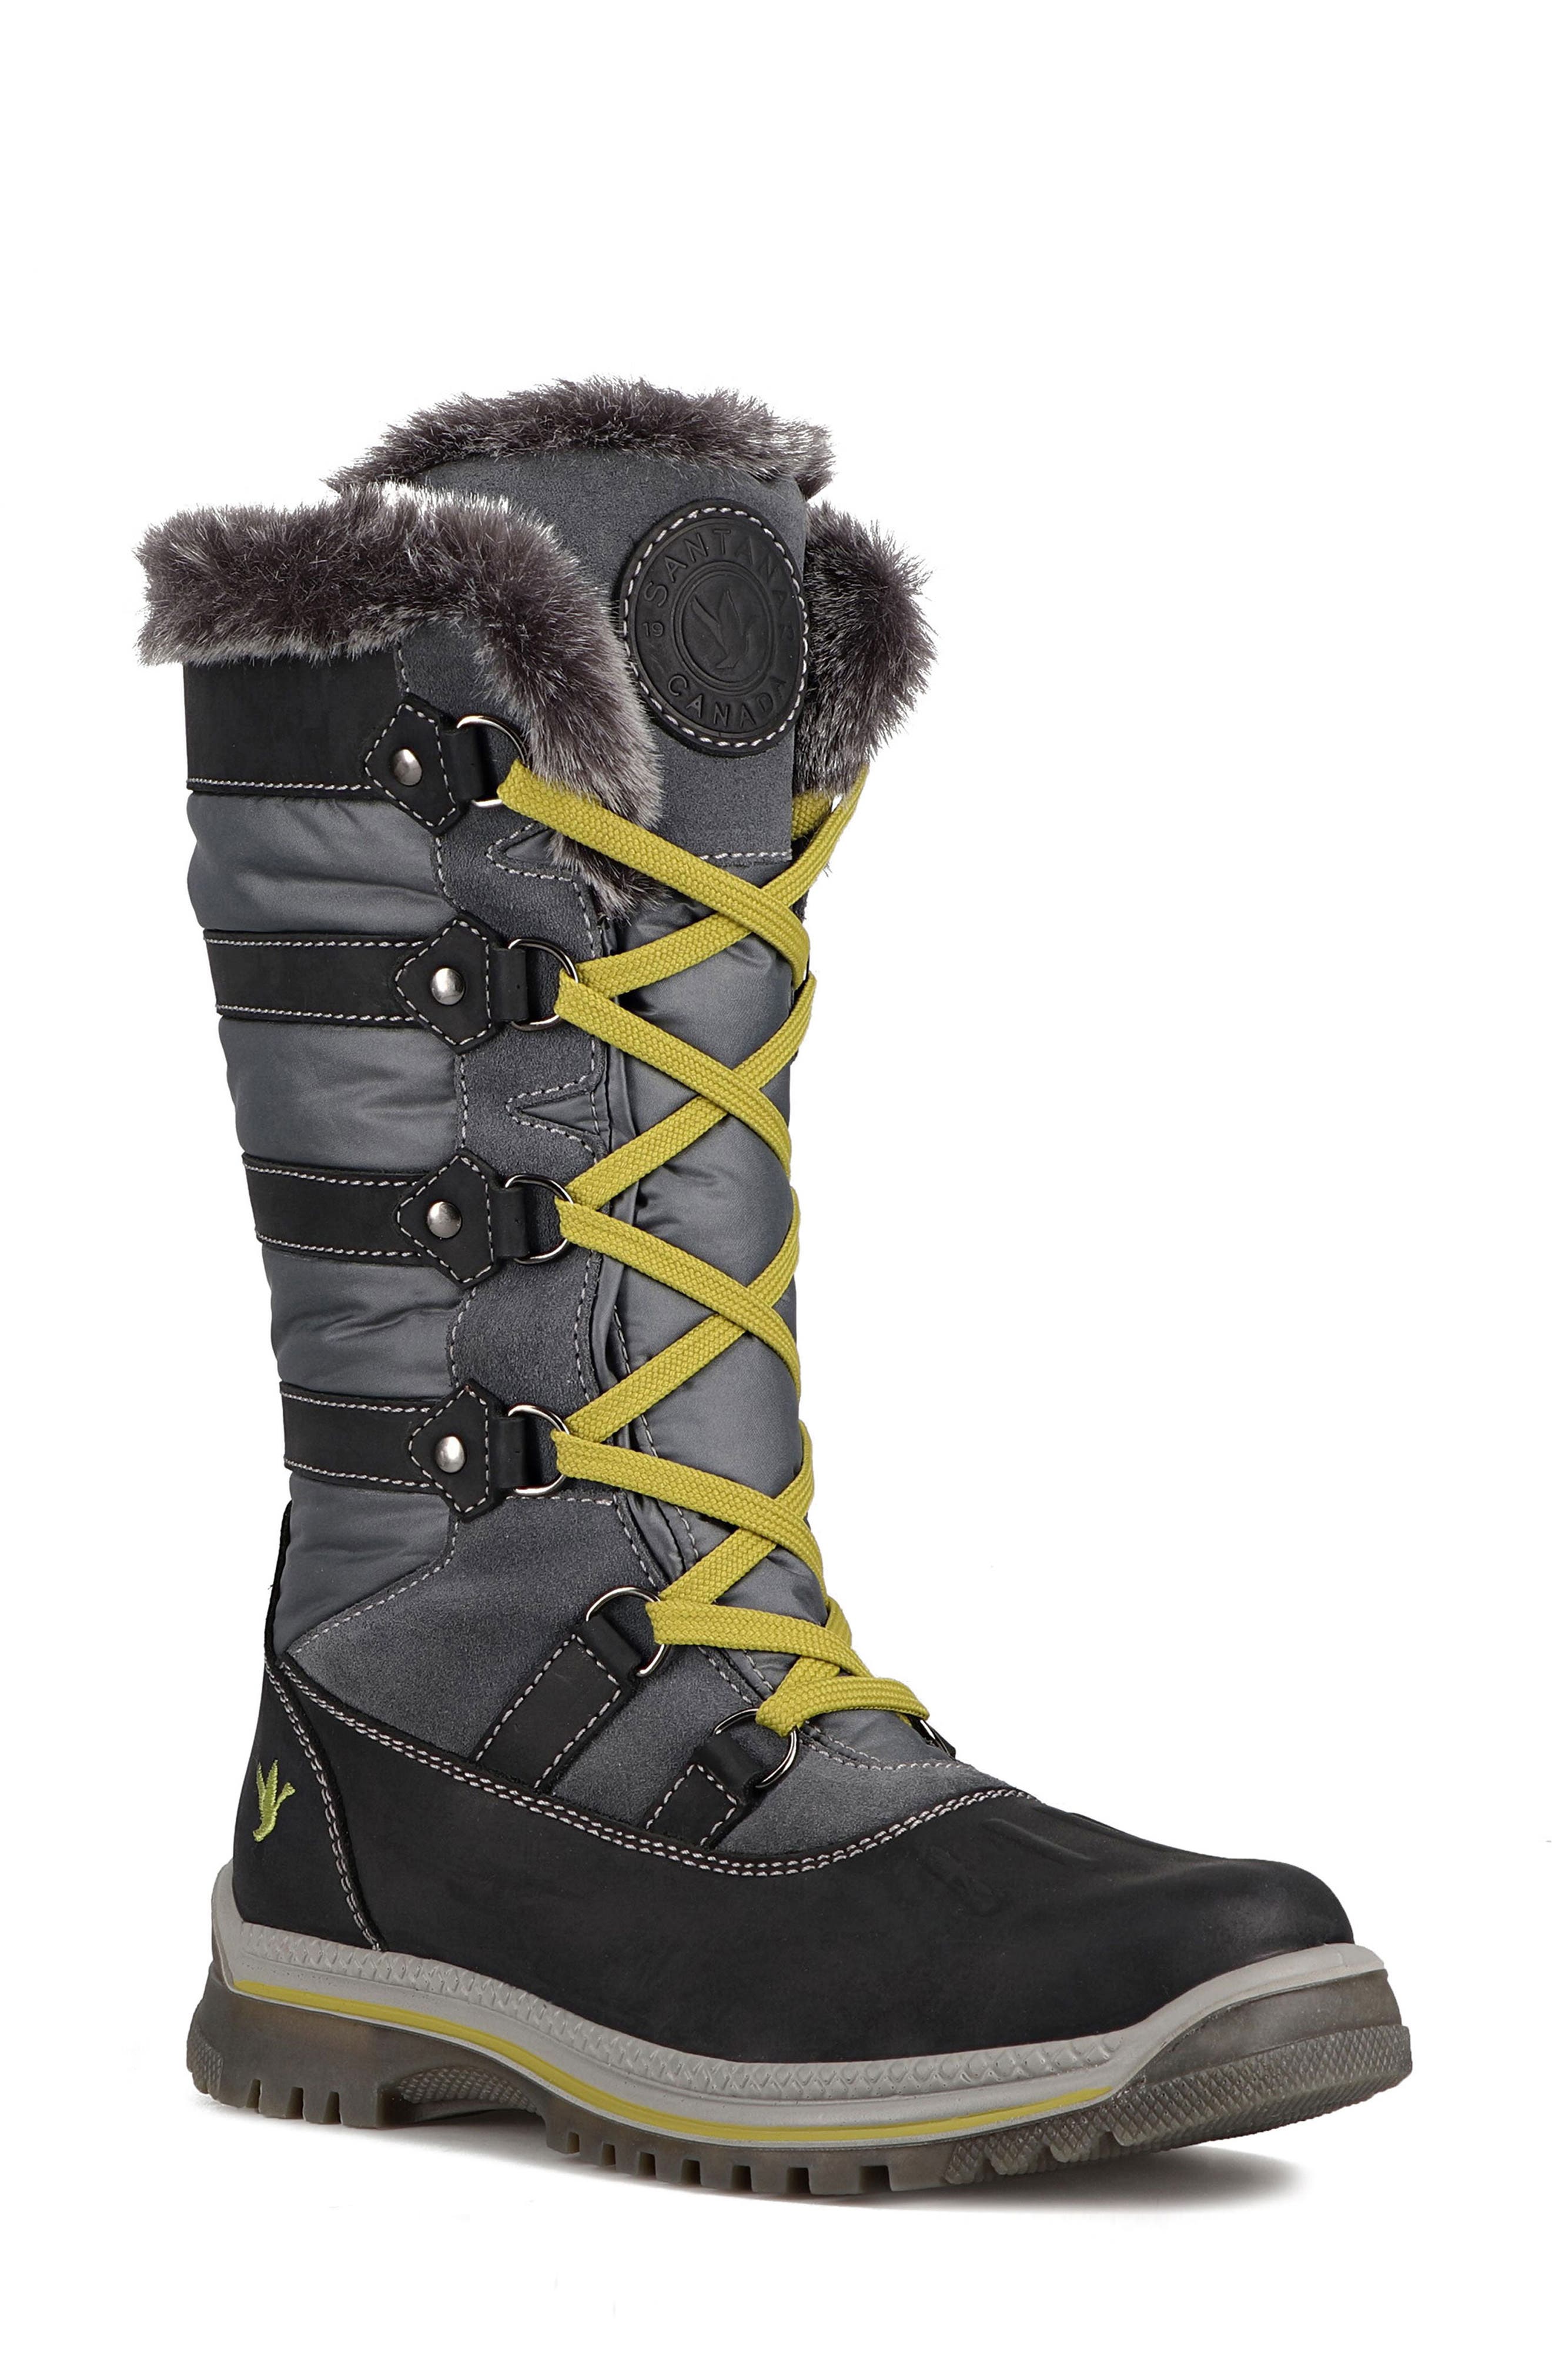 Schoenen damesschoenen Laarzen Berg Dames Maat 7 & Wandelschoenen Brand New Santana Canada Mackenzie Winter Boot 